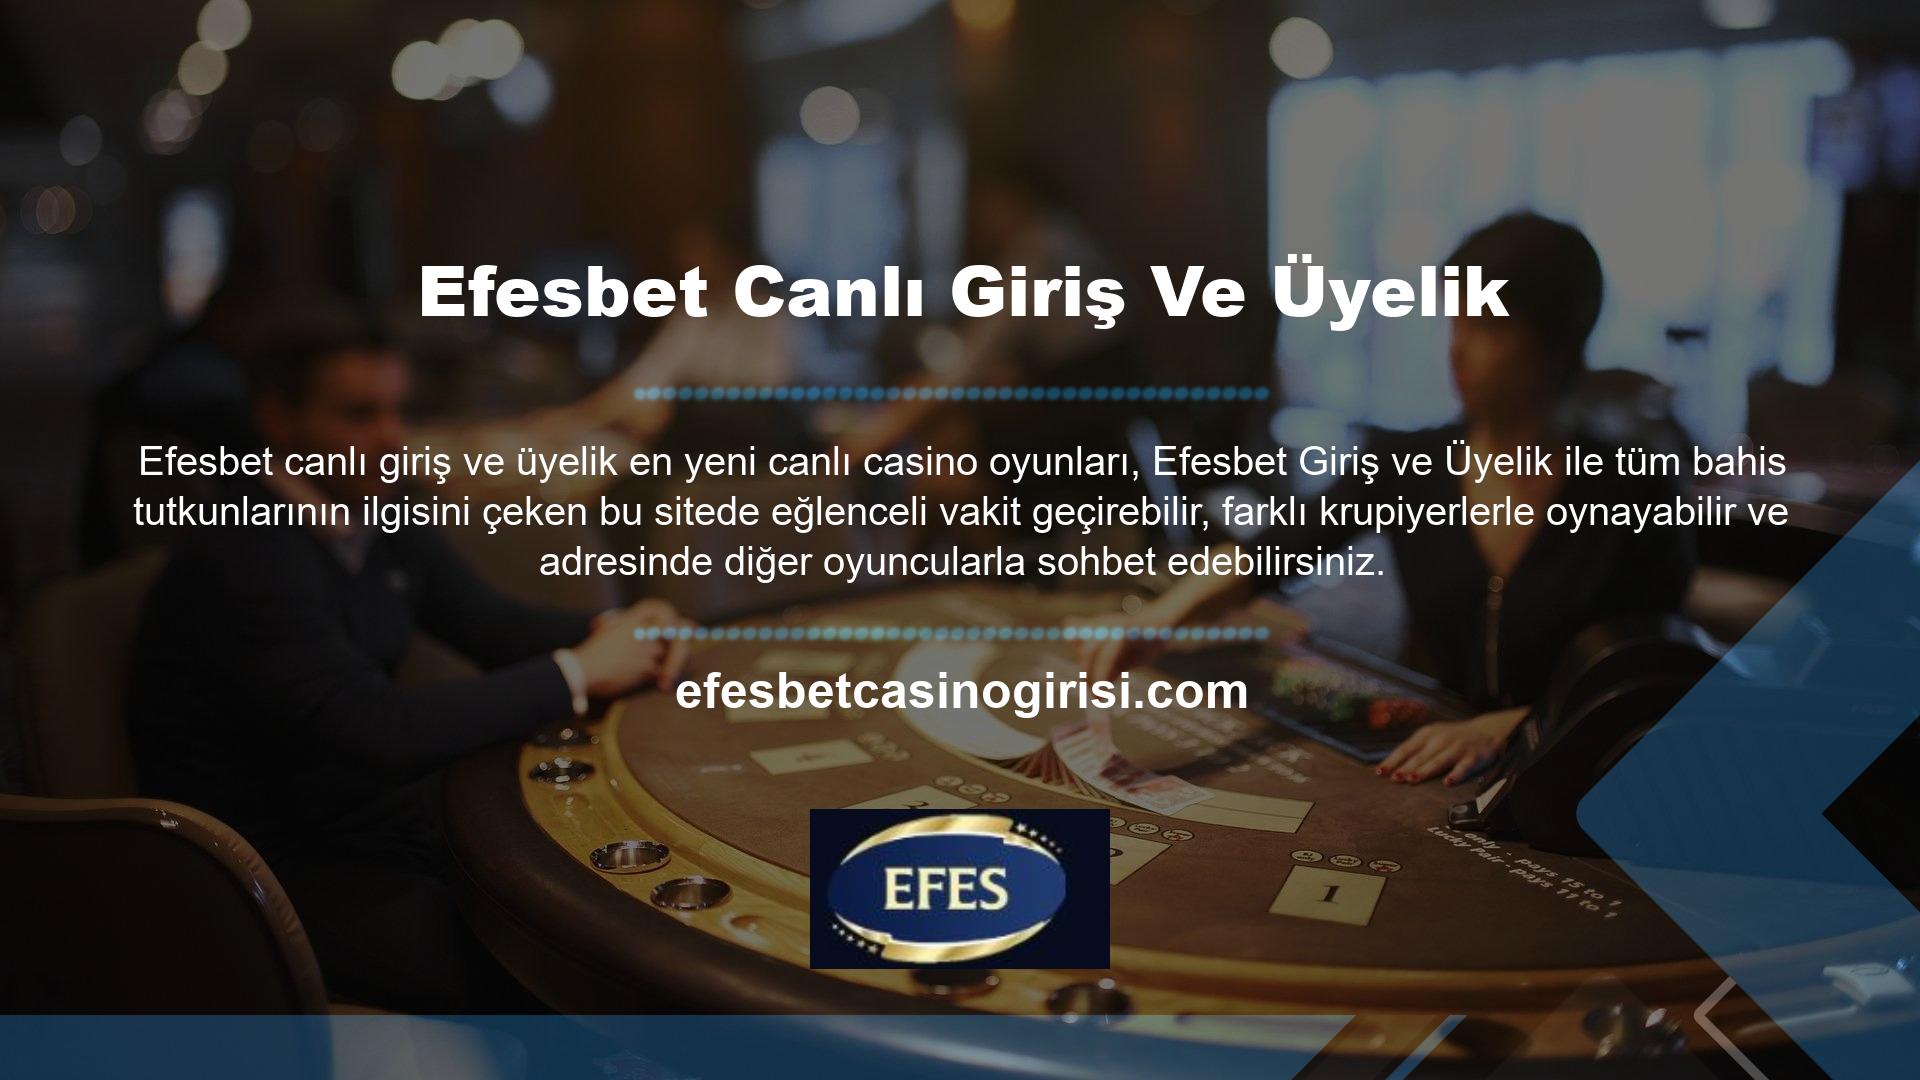 Efesbet canlı giriş ve üyelik canlı casino oyunları arasında canlı rulet ve canlı blackjack bulunmaktadır